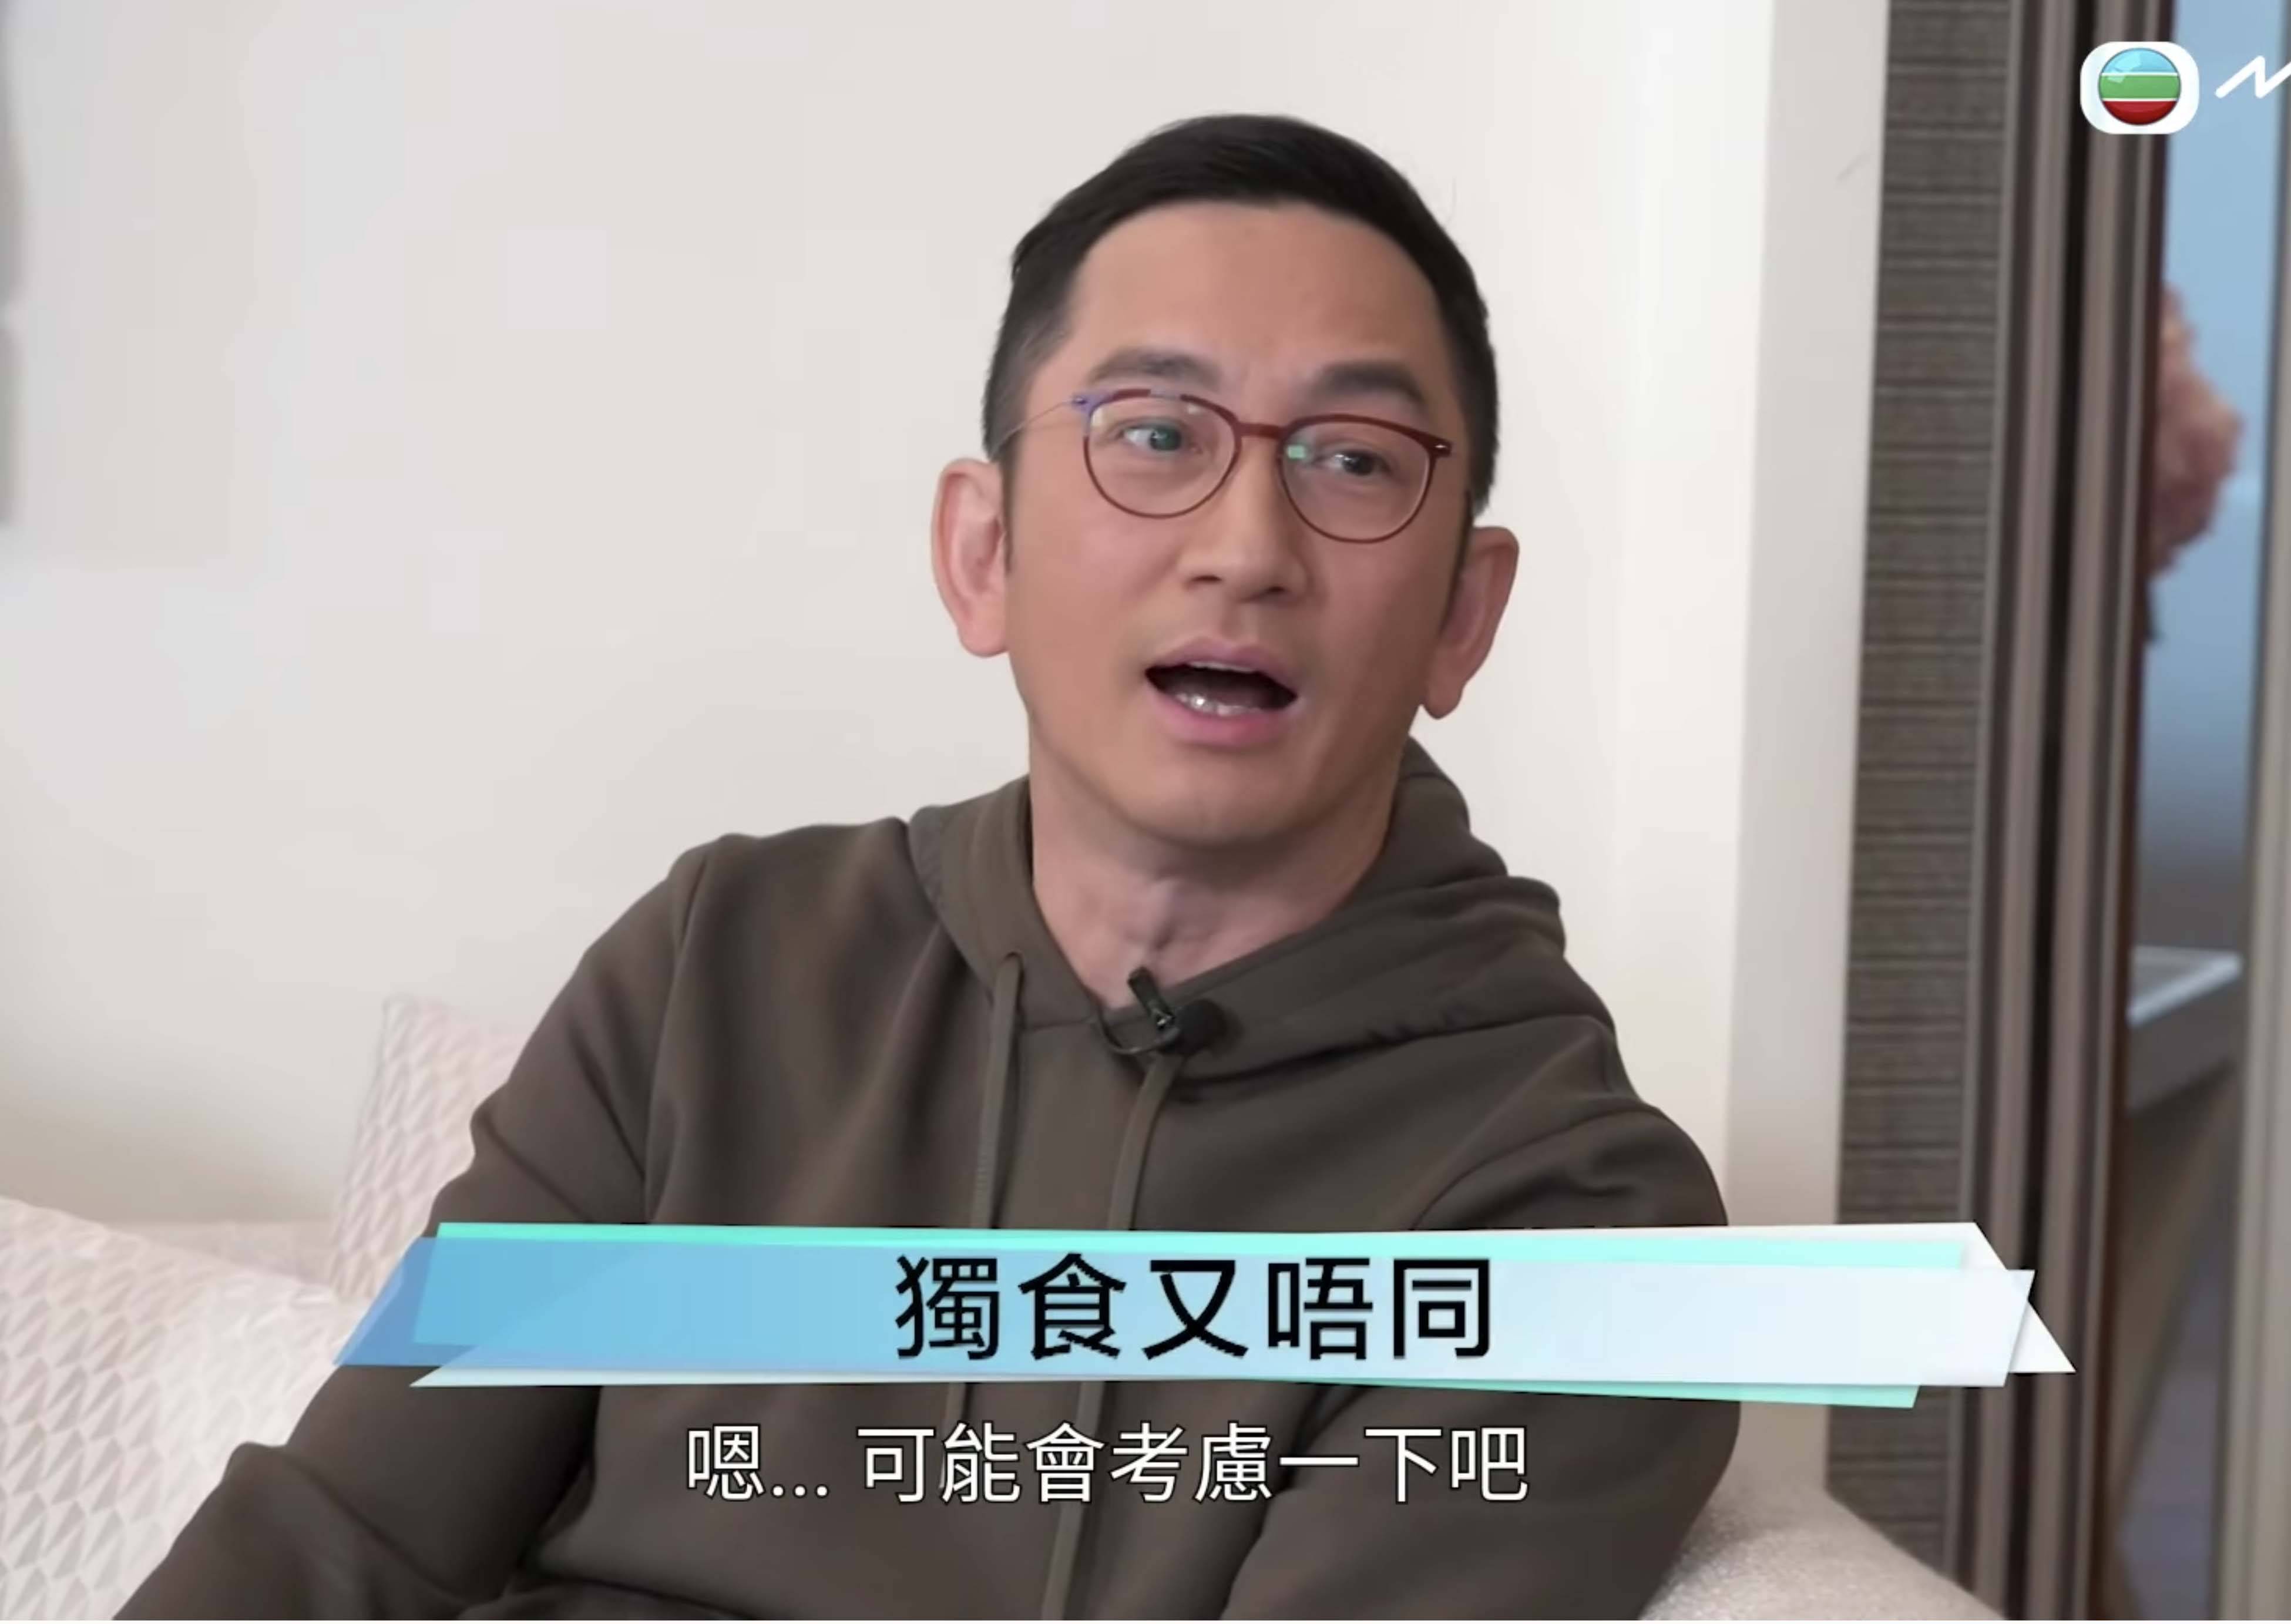 吳啟華長駐內地發展，要養女同養埋前妻一家，今後說話要謹慎﹗ 圖片來源：YouTube@TVB《Tiger's Talk》